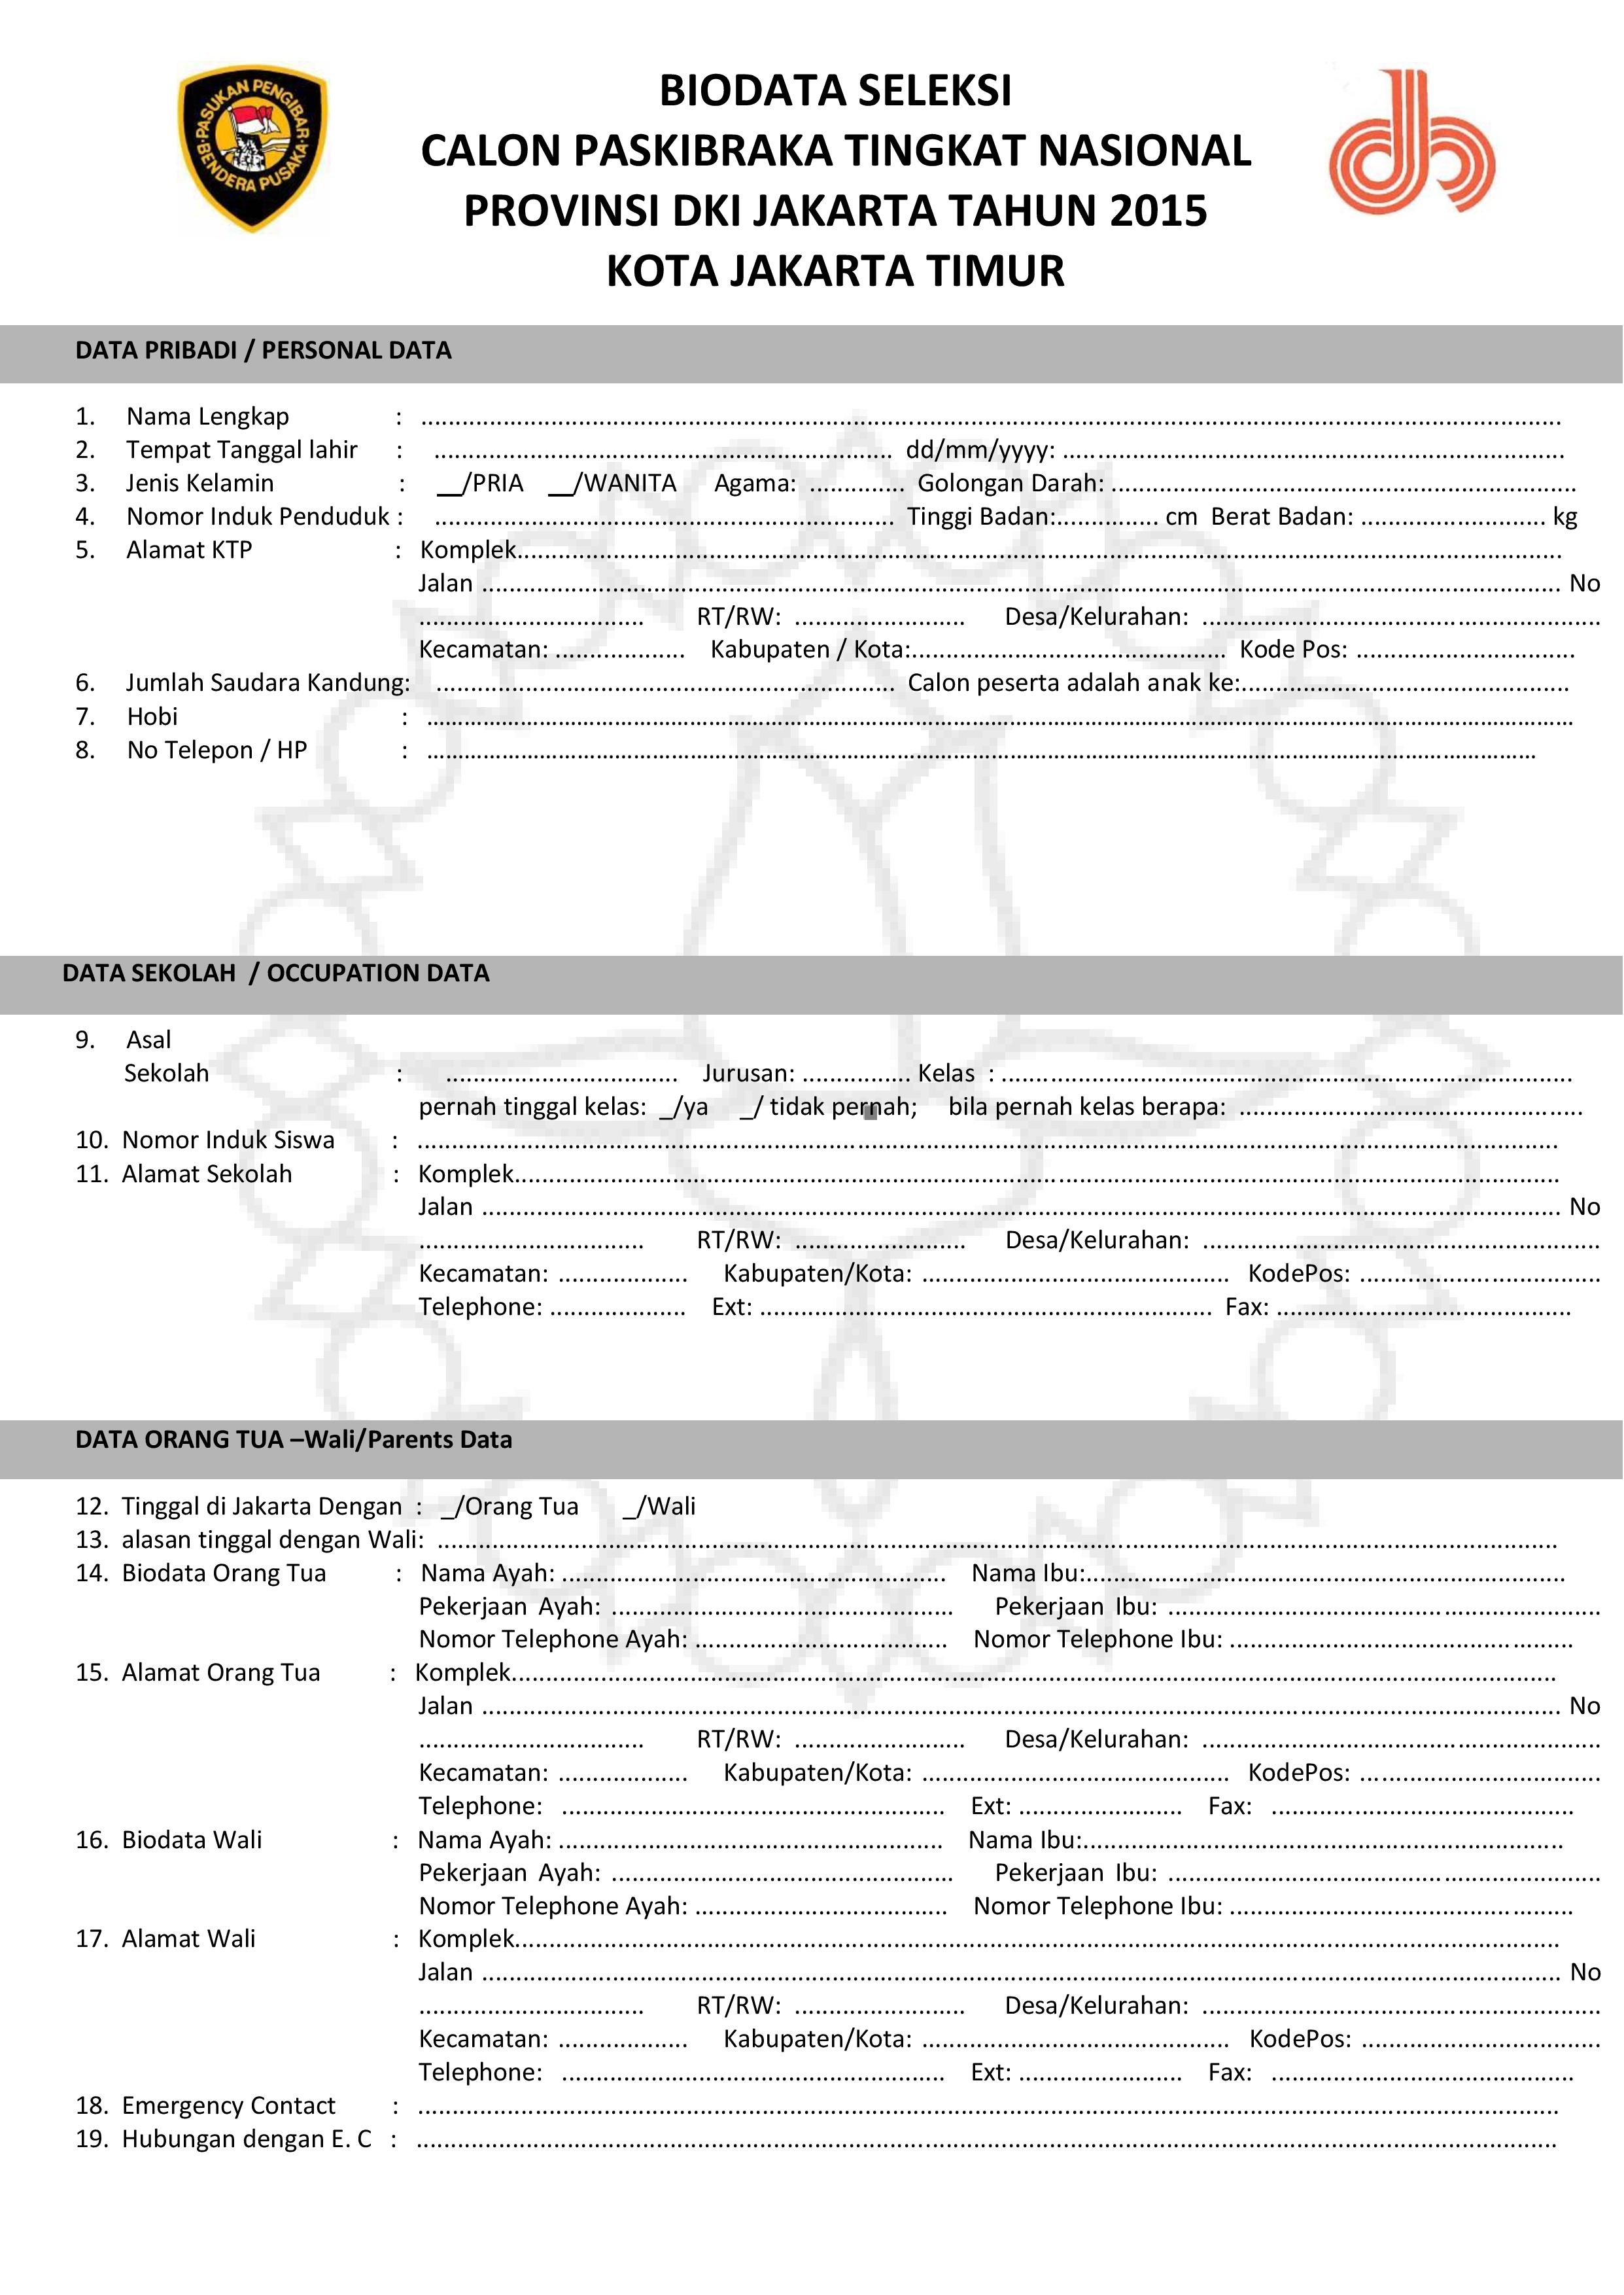 Contoh Formulir Pendaftaran Anggota Pmr - Simak Gambar Berikut